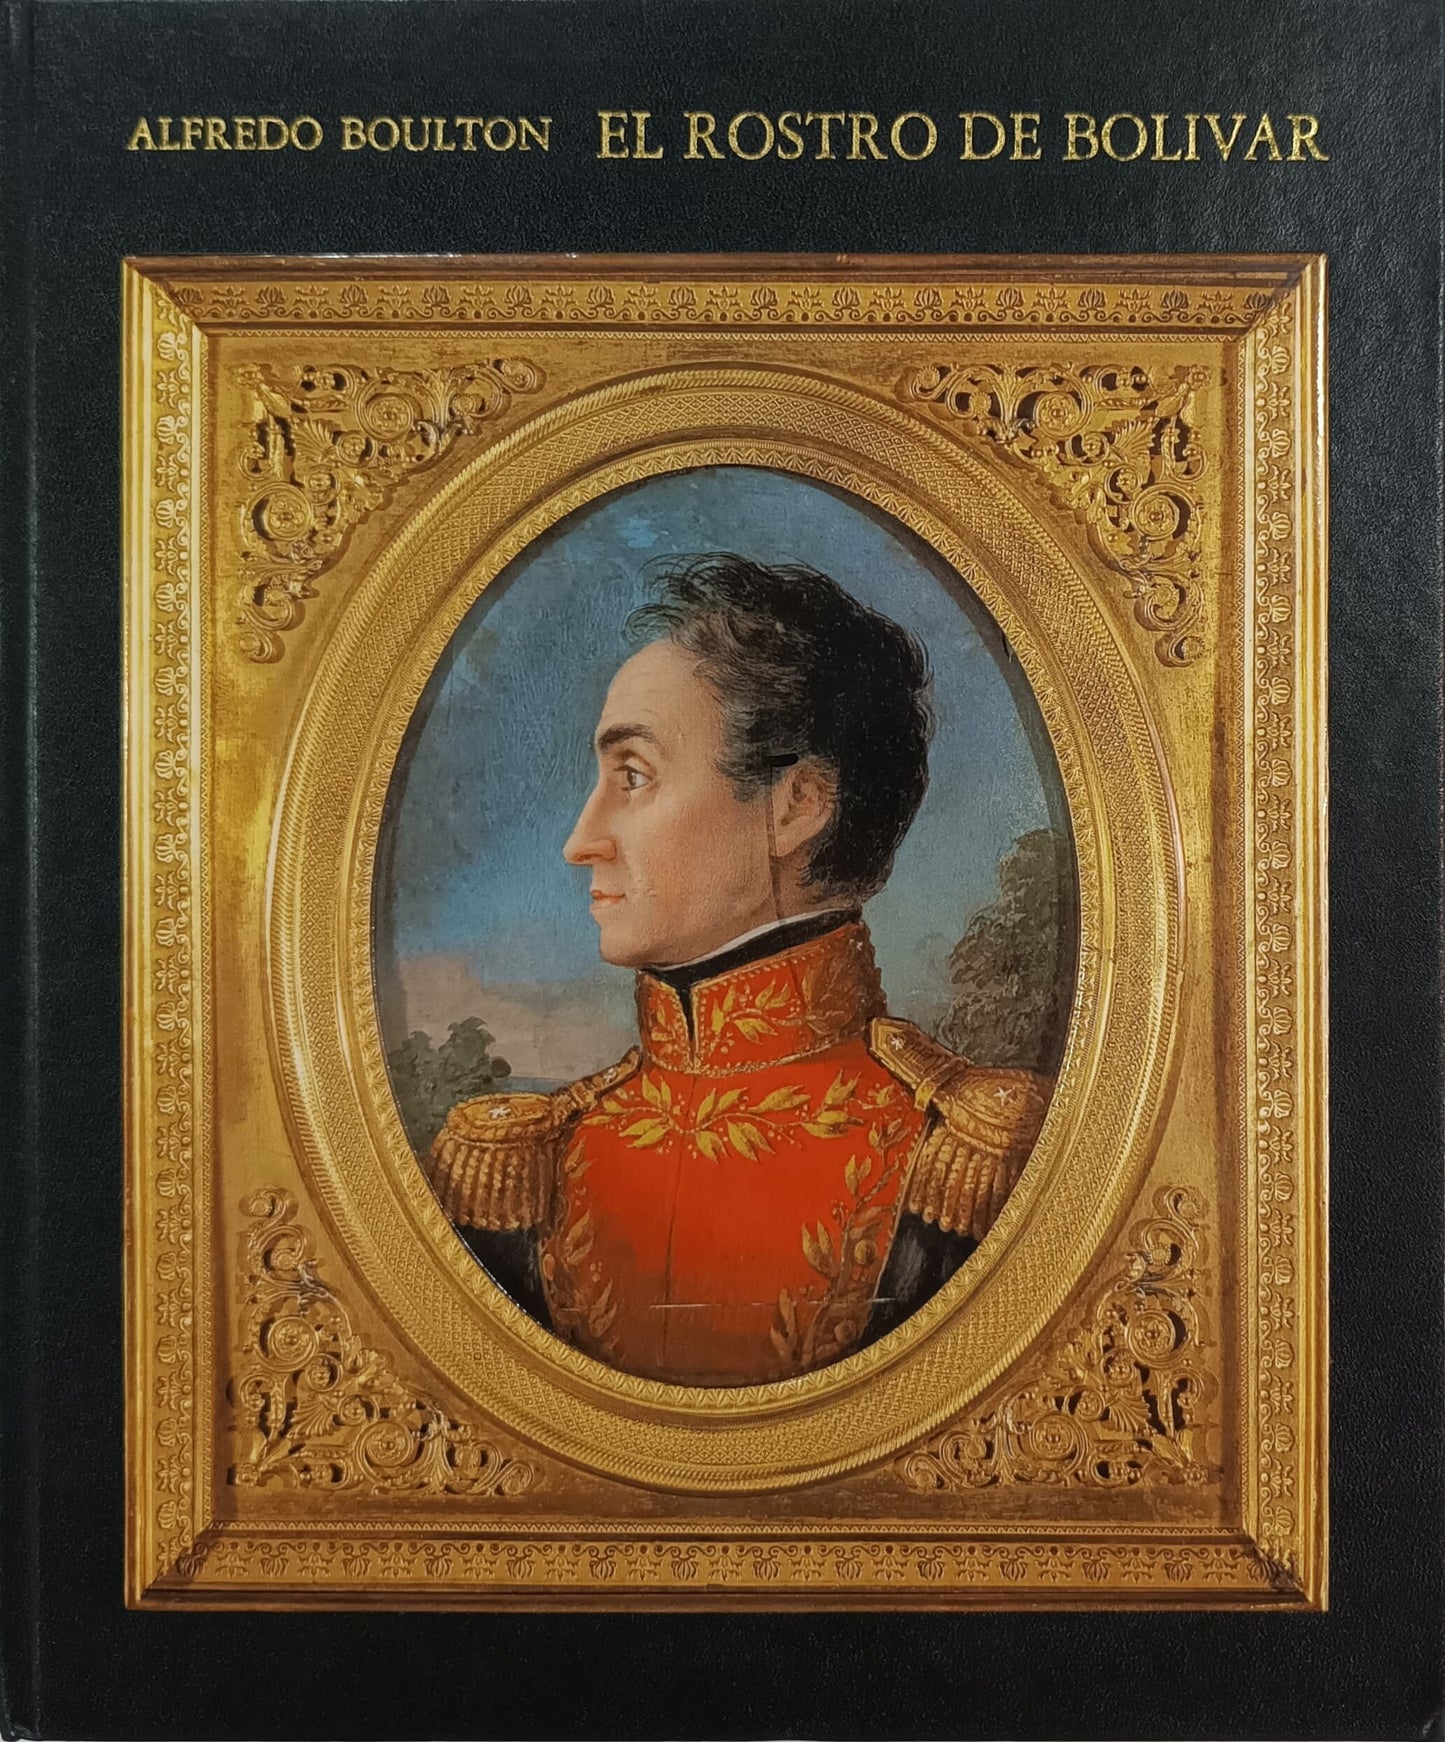 El Rostro de Bolívar